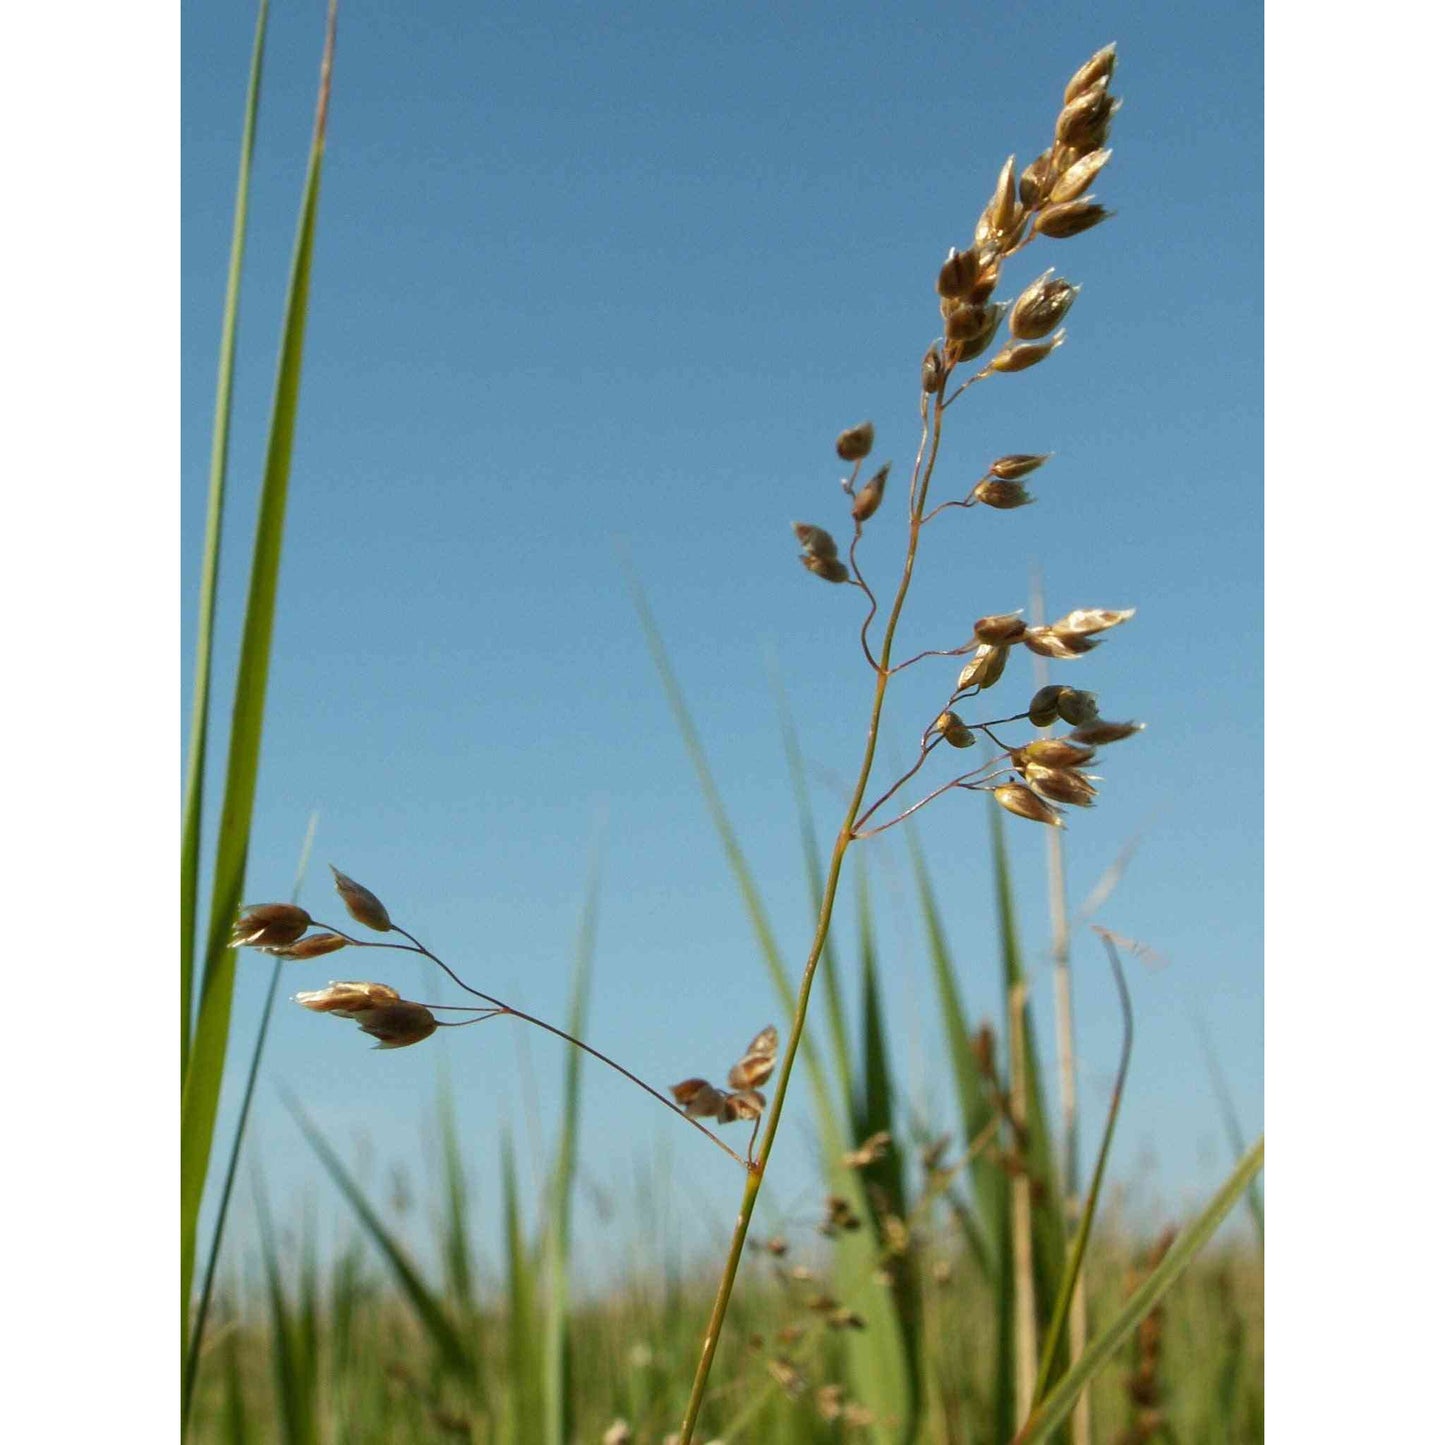 Hierochloe odorata (Sweet Grass)  Natural Communities LLC